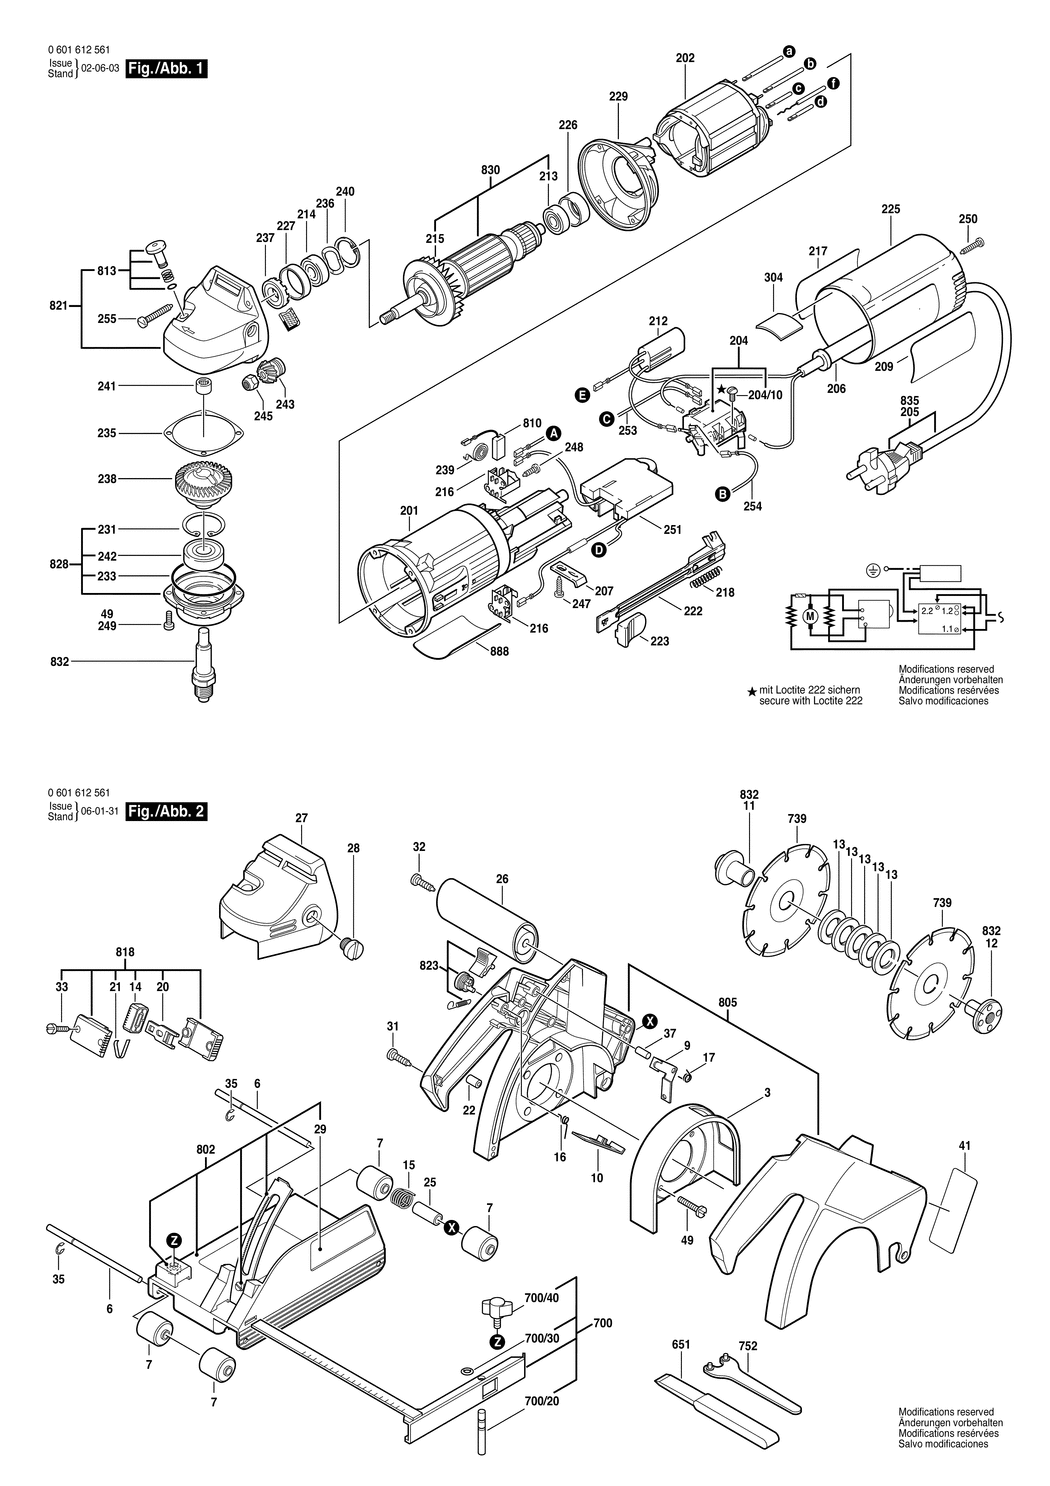 Bosch R-115 / 0601612561 / EU 230 Volt Spare Parts